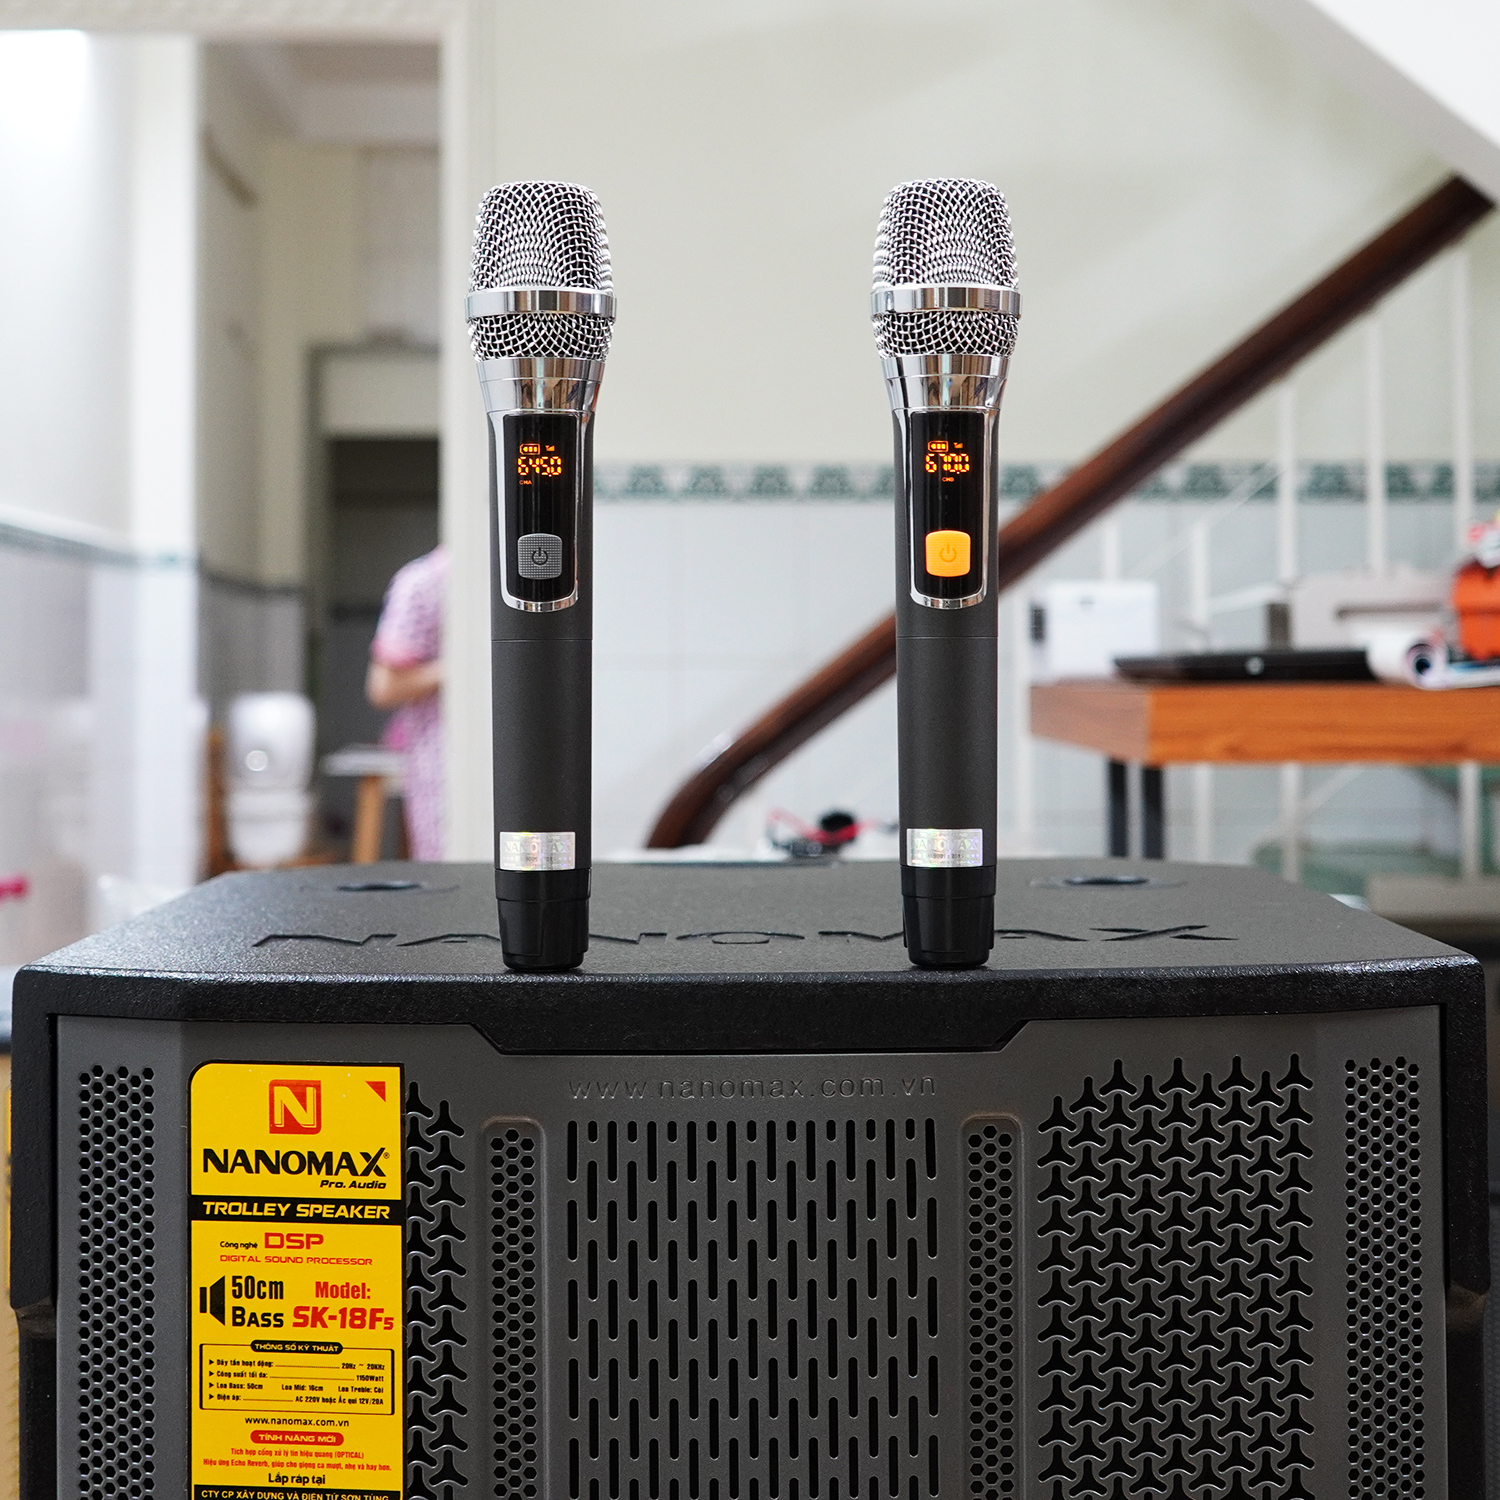 Loa Kéo Công Suất Lớn Nanomax SK-18F5 Bass 5 Tấc 50cm Công Suất 1150w Karaoke Bluetooth Lưới Xám Siêu Công Nghệ 2022 Hàng Chính Hãng